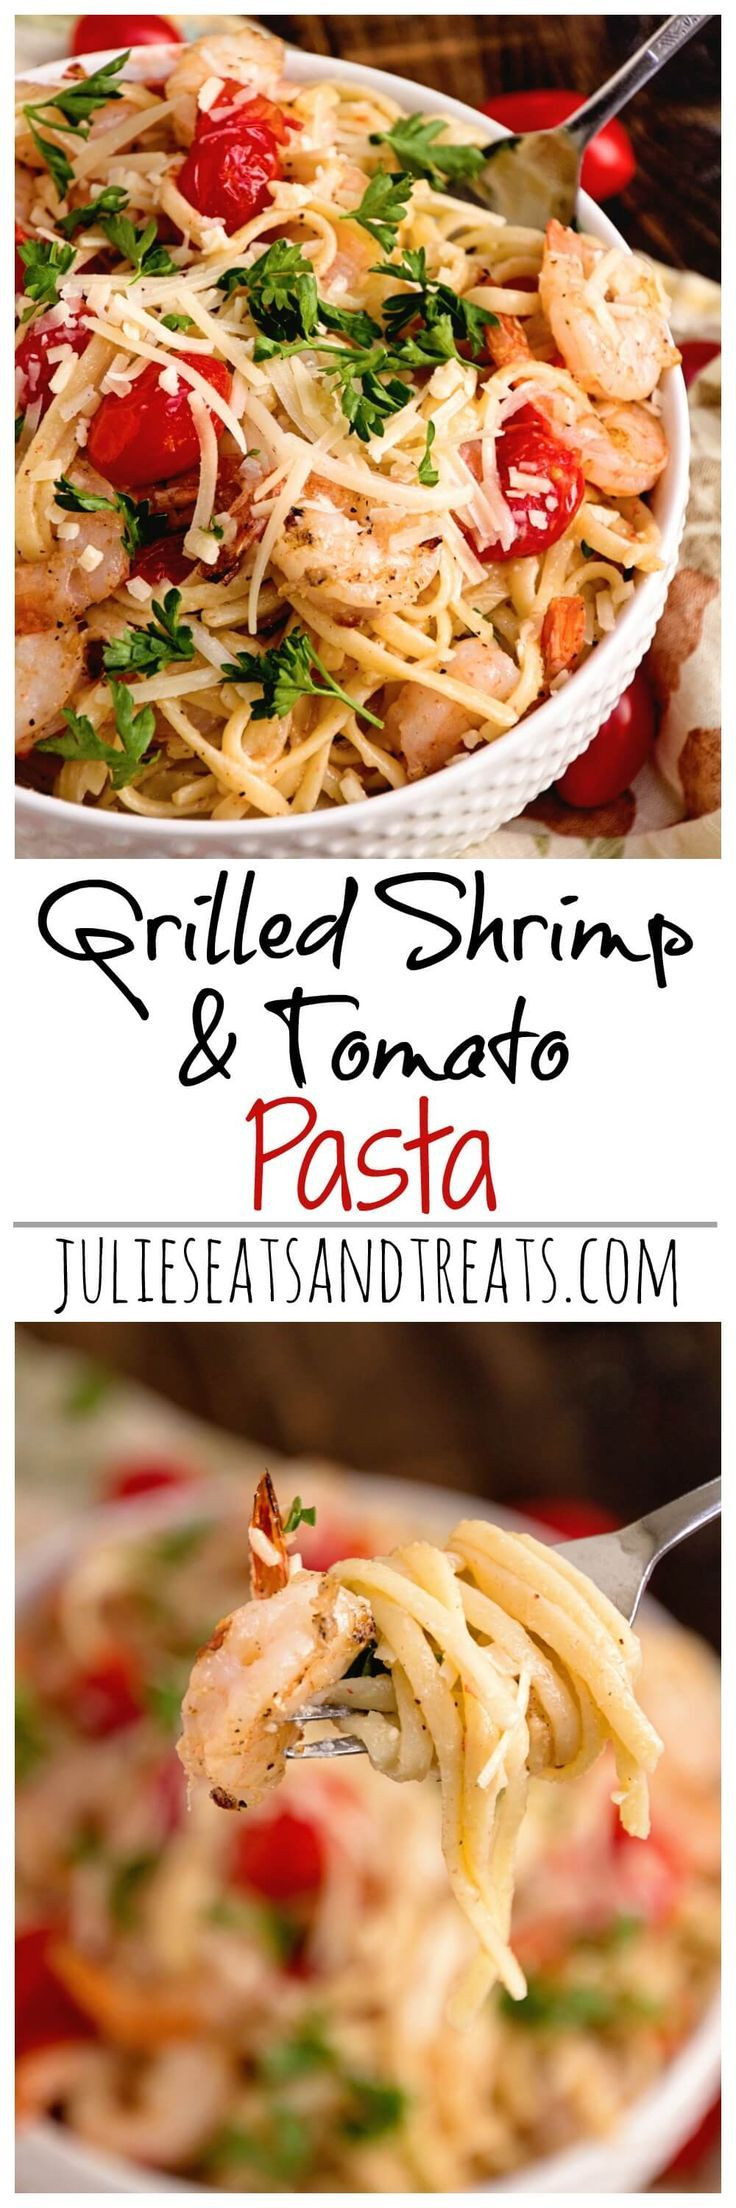 Grilled Shrimp Pasta
 Grilled Shrimp & Tomato Pasta Recipe